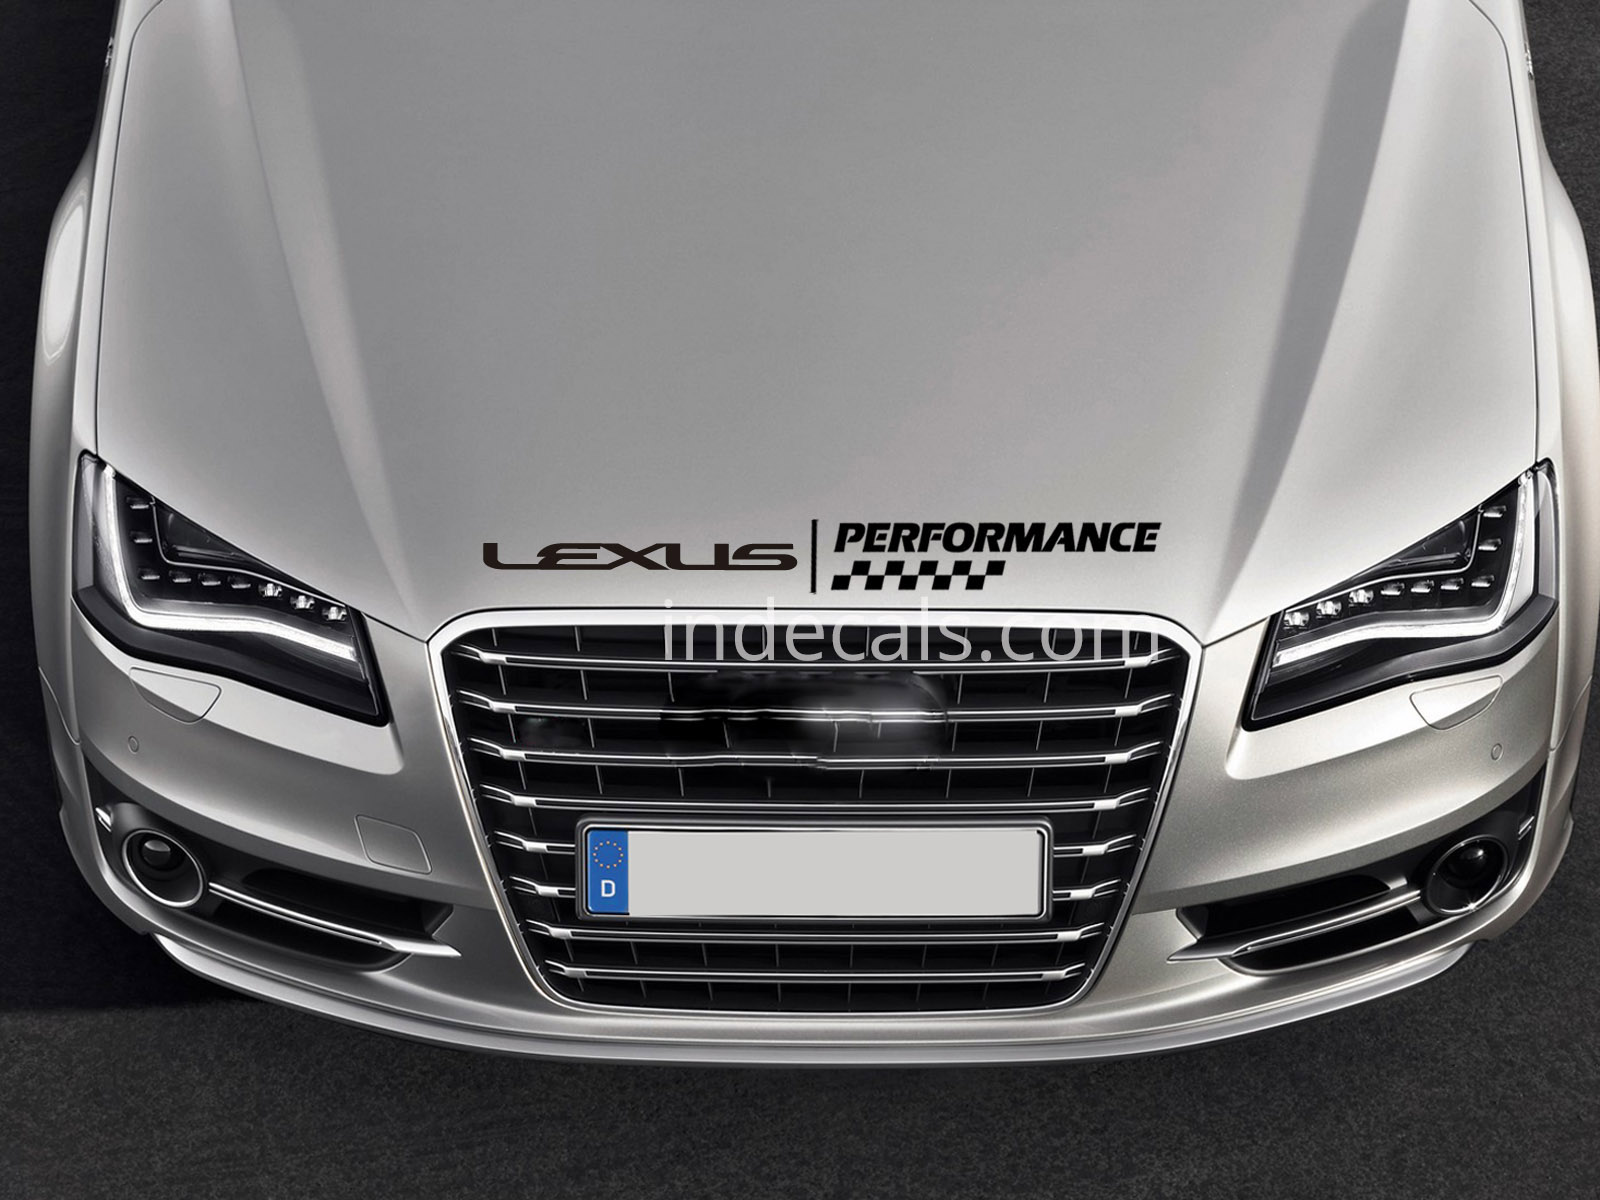 1 x Lexus Performance Sticker for Bonnet - Black